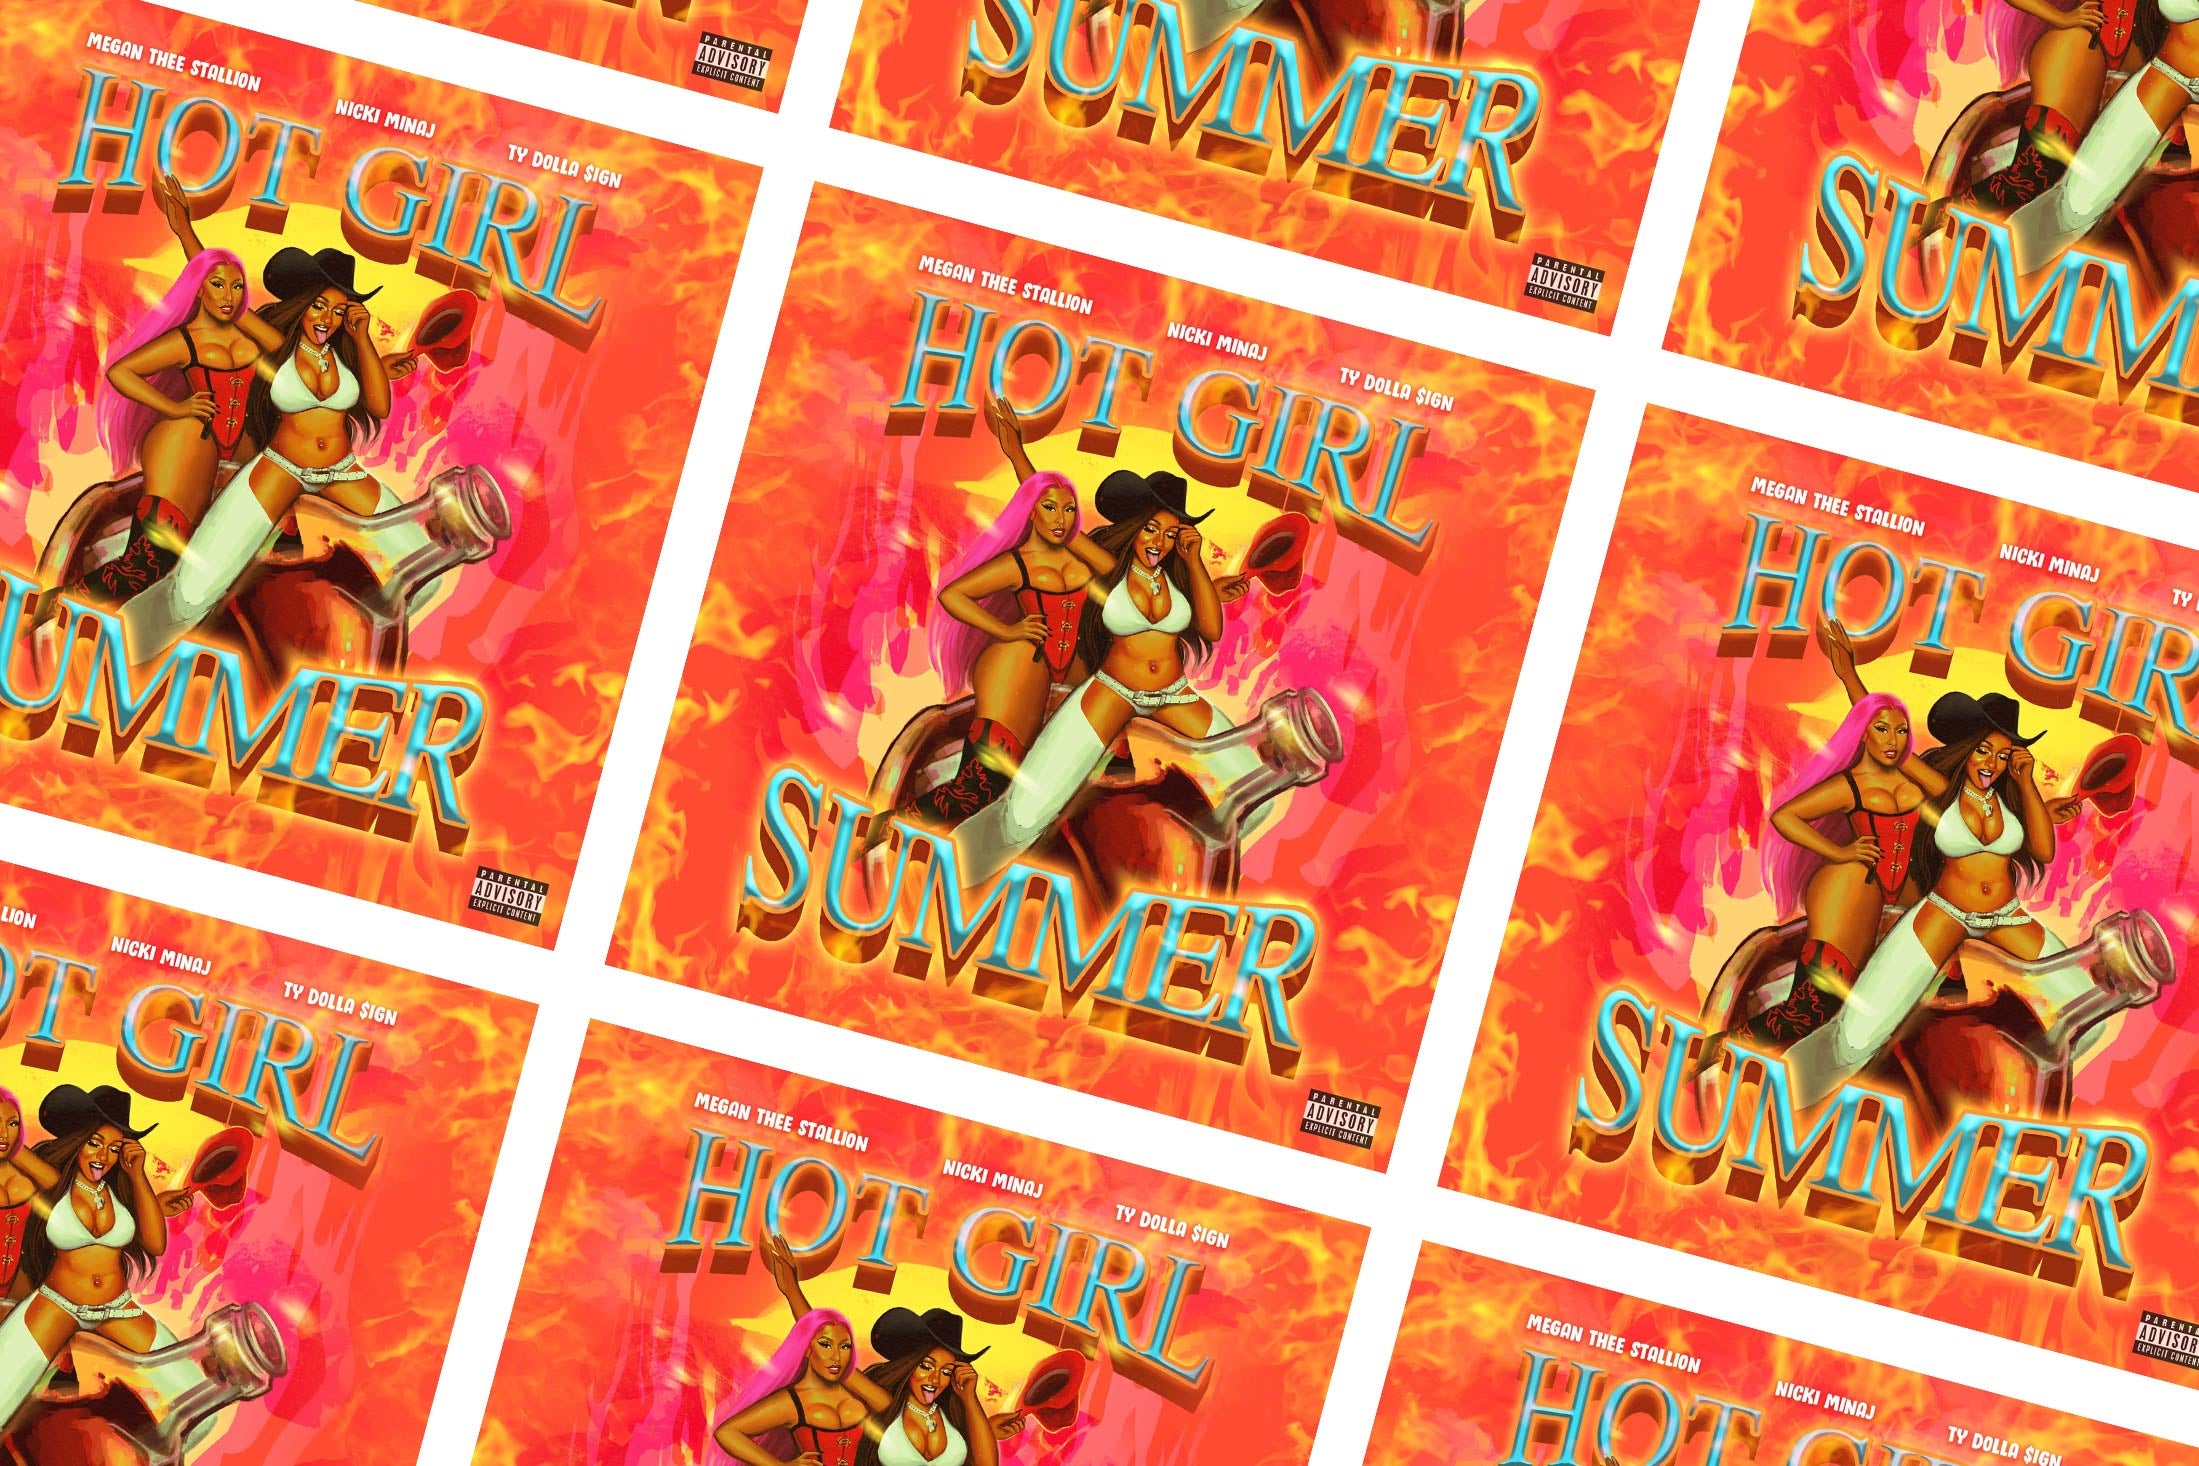 “Hot Girl Summer” cover art.